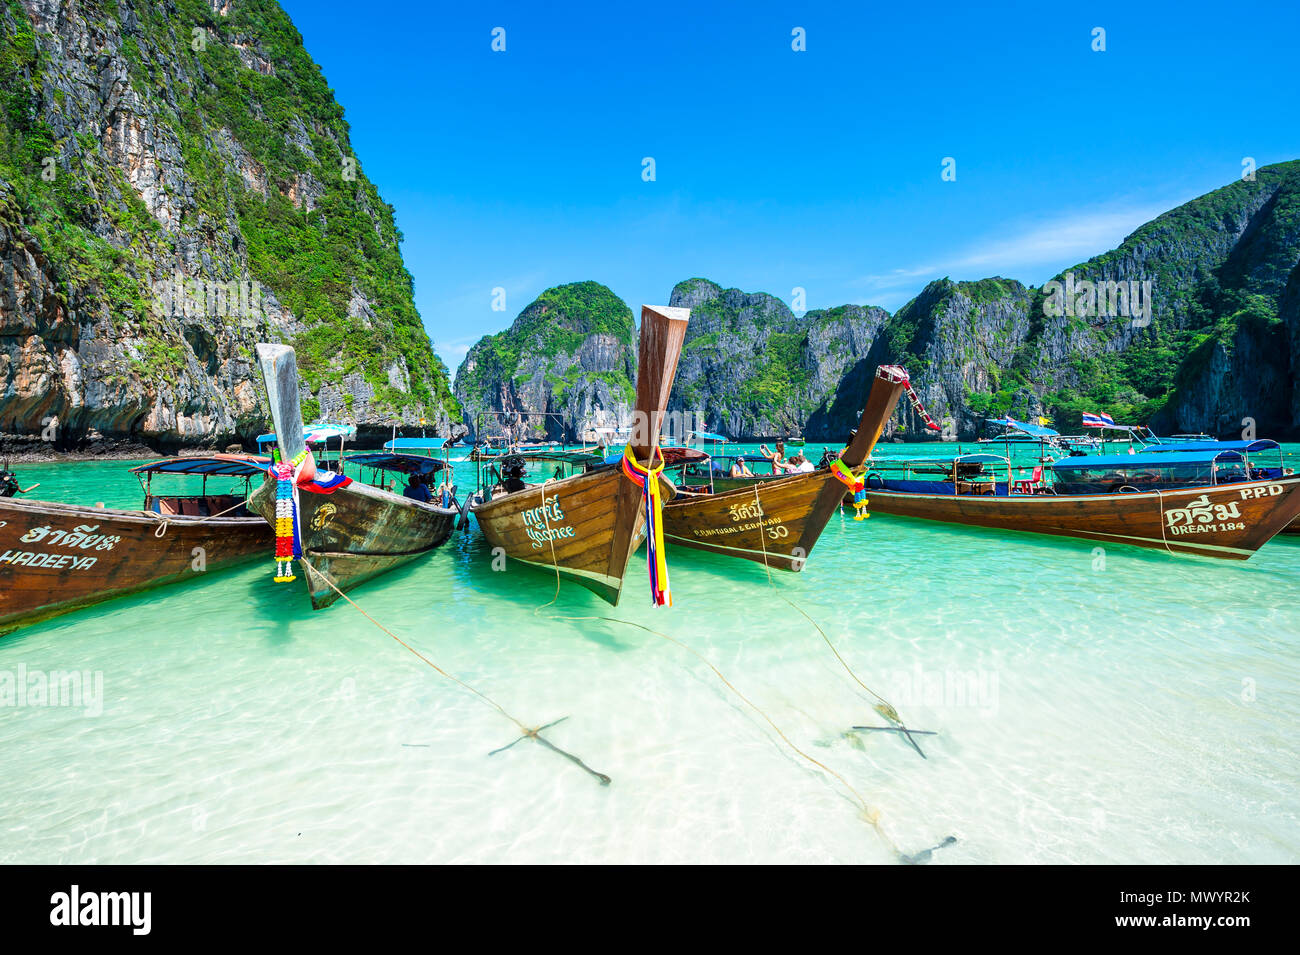 MAYA BAY, Tailandia - 12 novembre 2014: Thai longtail barche decorate con buona fortuna infissi a Maya Bay prima che essa si chiuda a causa del sovraffollamento Foto Stock